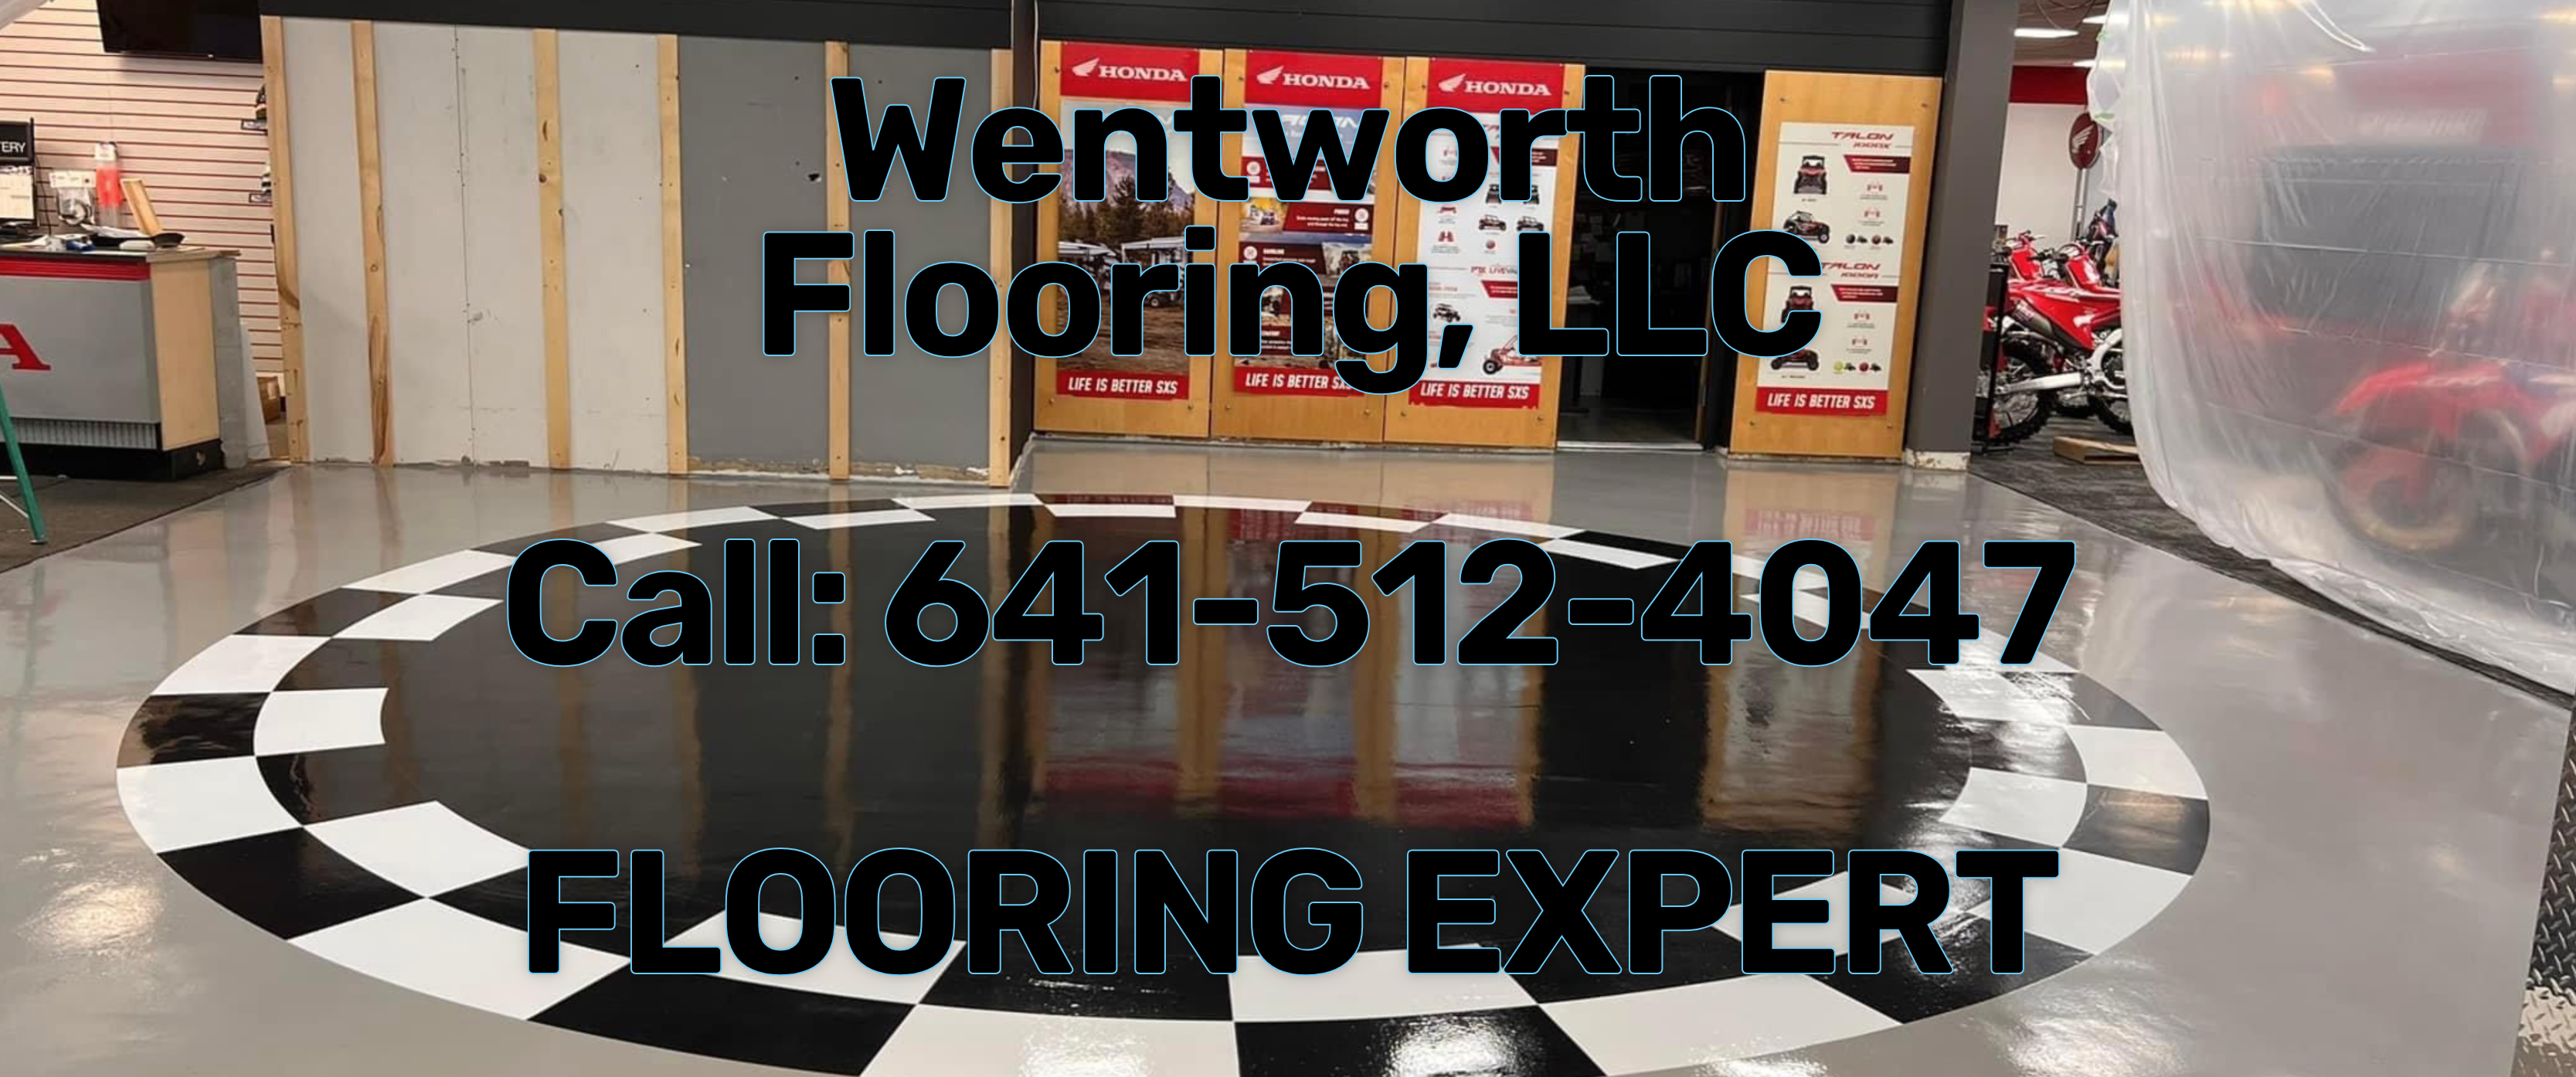 Wentworth Flooring, LLC - Mason City, Iowa